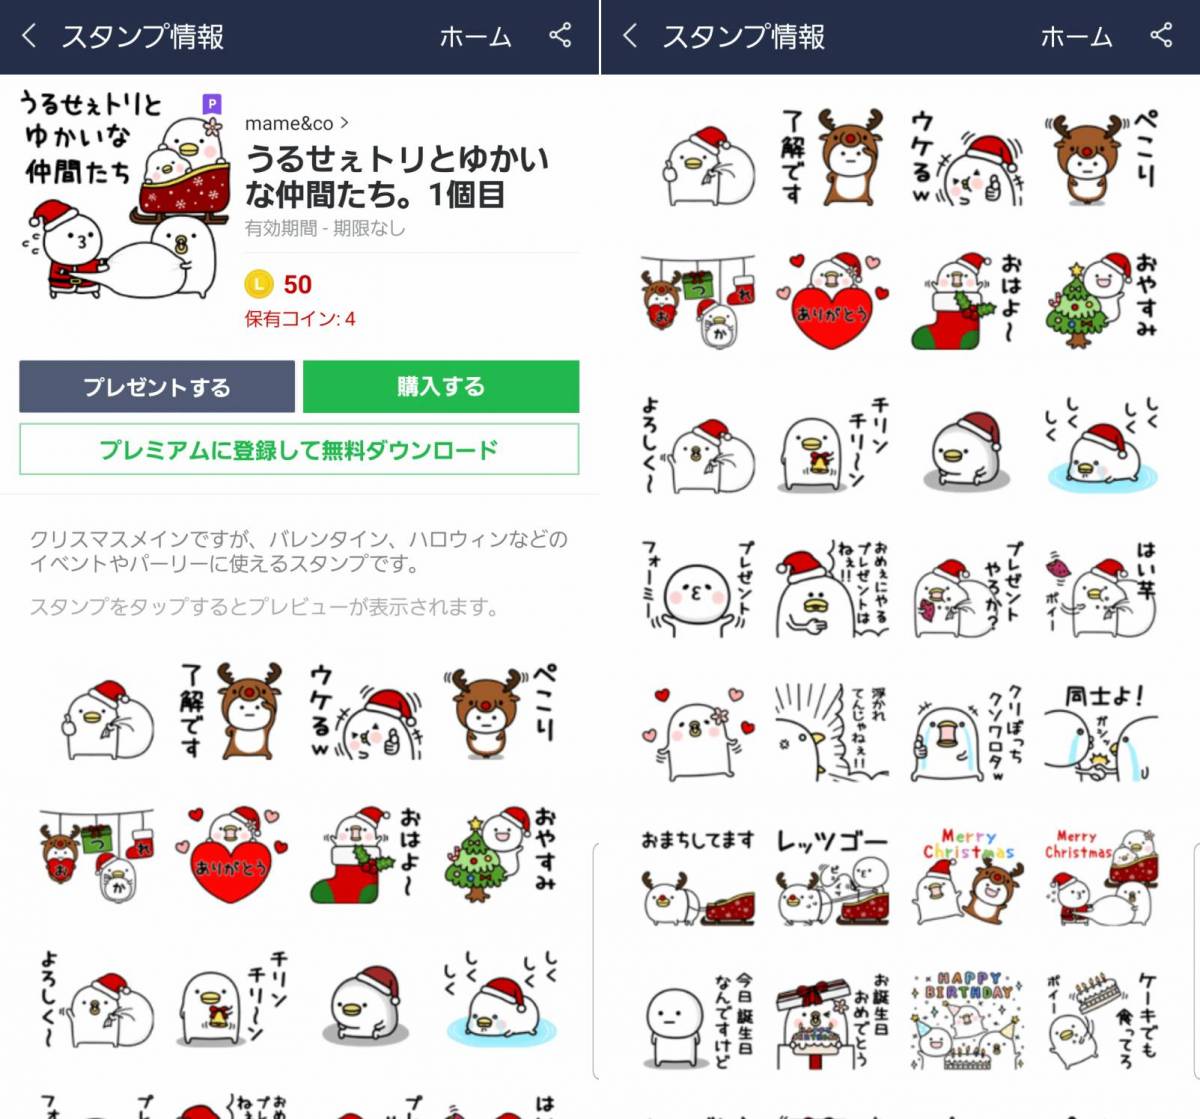 クリスマスを彩るlineスタンプ 絵文字 今すぐ送りたい19個の画像 11枚目 Appliv Topics